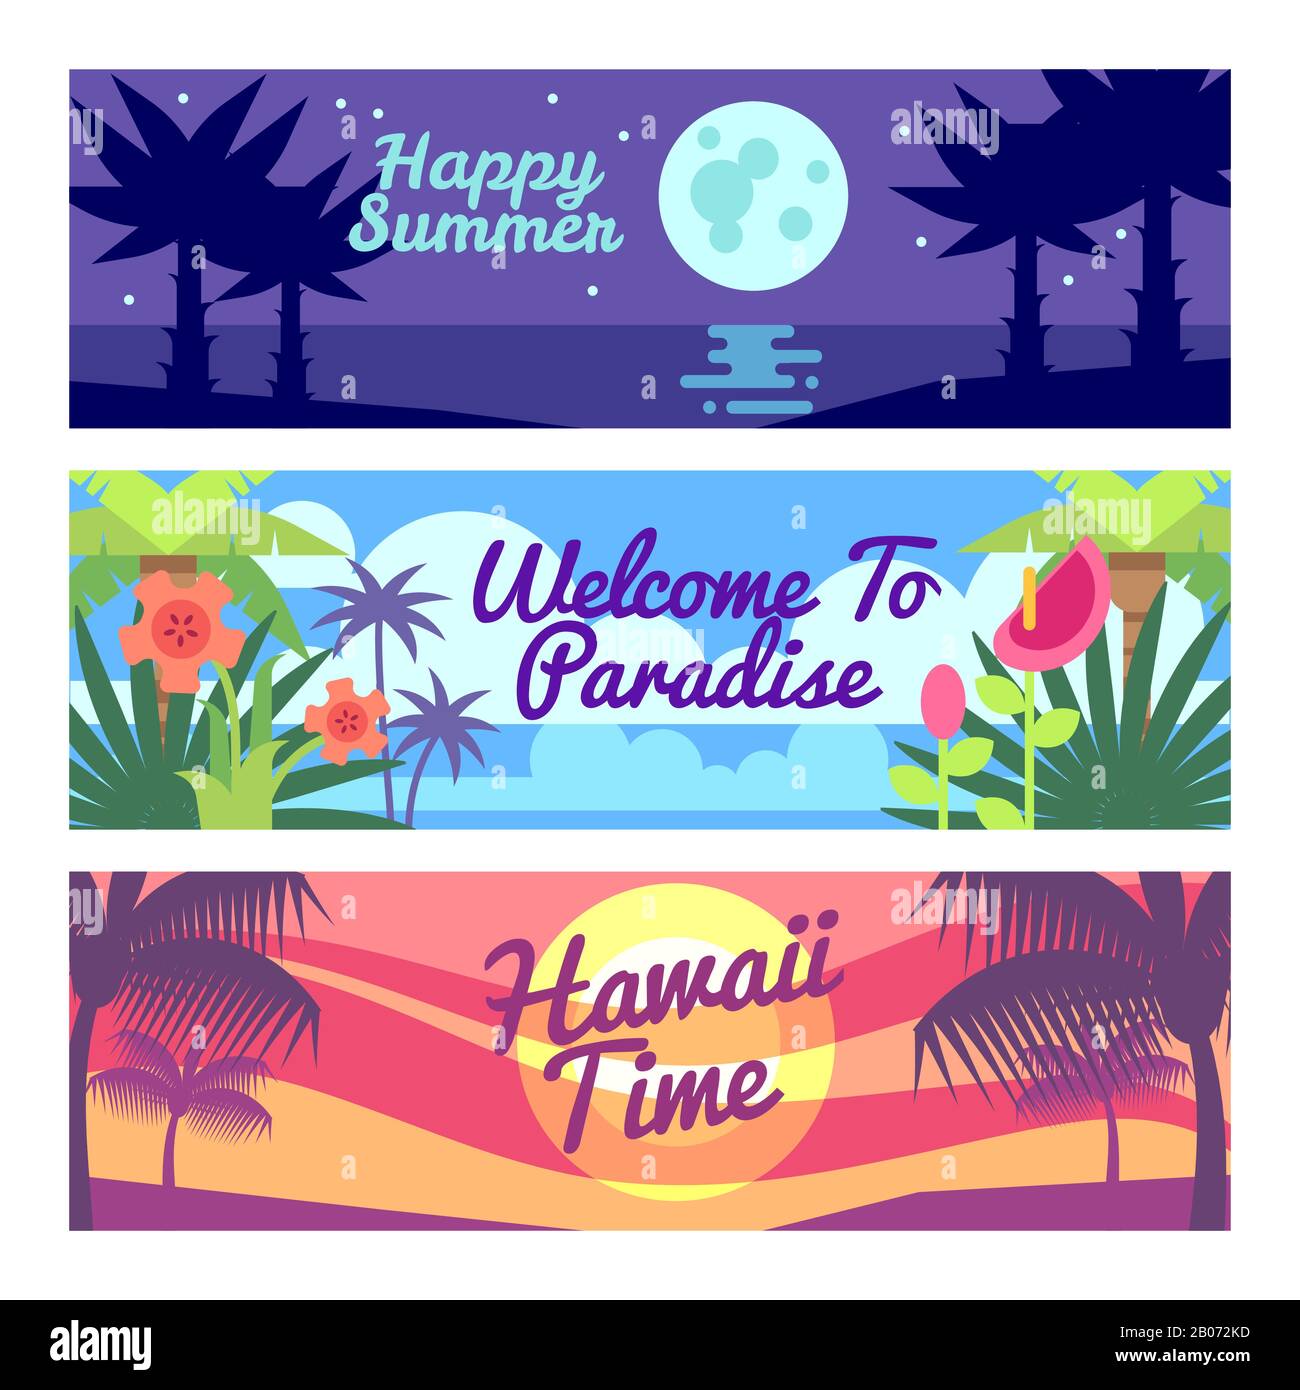 Felice estate viaggio tempo hawaii vettore pubblicità banner set con piante tropicali e fiori. Vacanza sull'oceano, vacanza sul paradiso del mare illustrazione Illustrazione Vettoriale